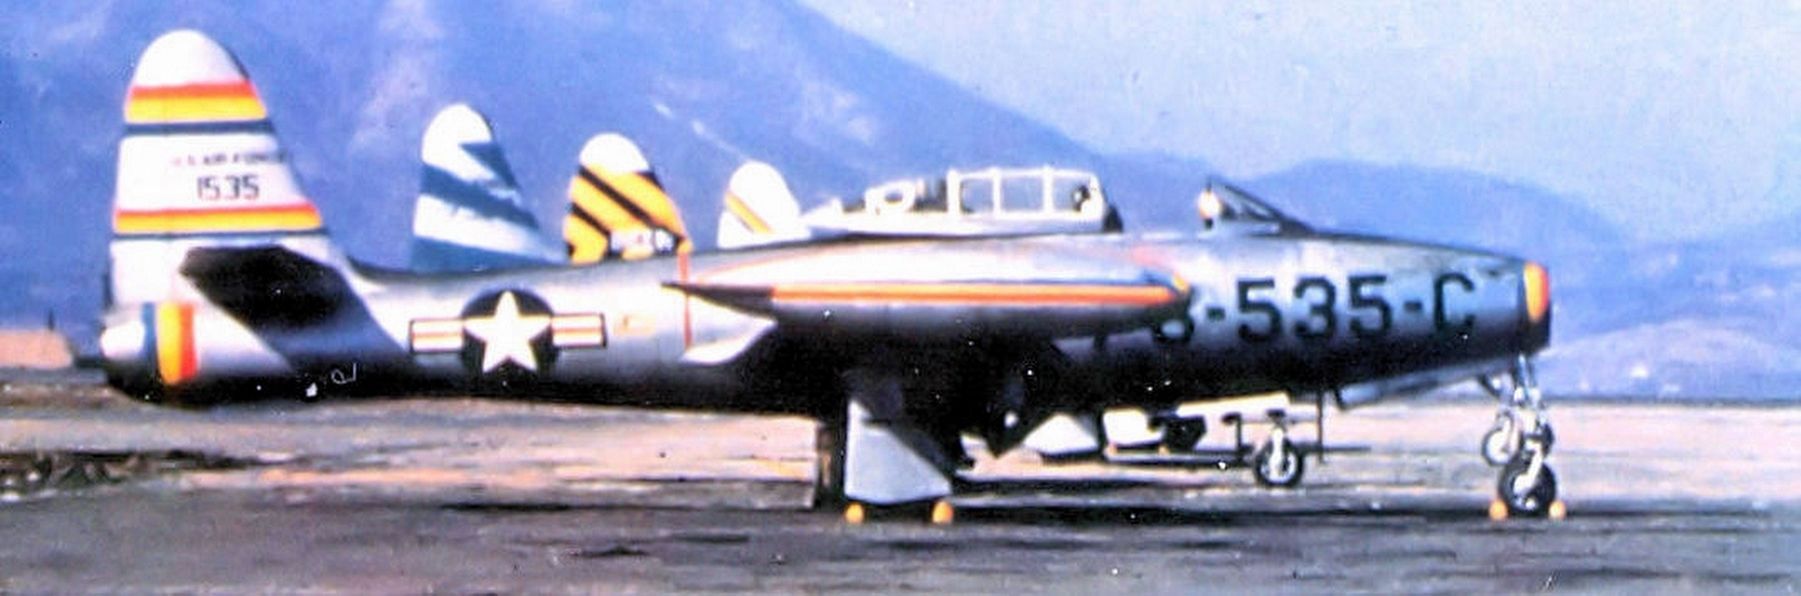 69th Fighter Squadron F-84E Thunderjet (s/n 51-535) Taegu Air Base (K-2), South Korea, 1952 image. Click for full size.